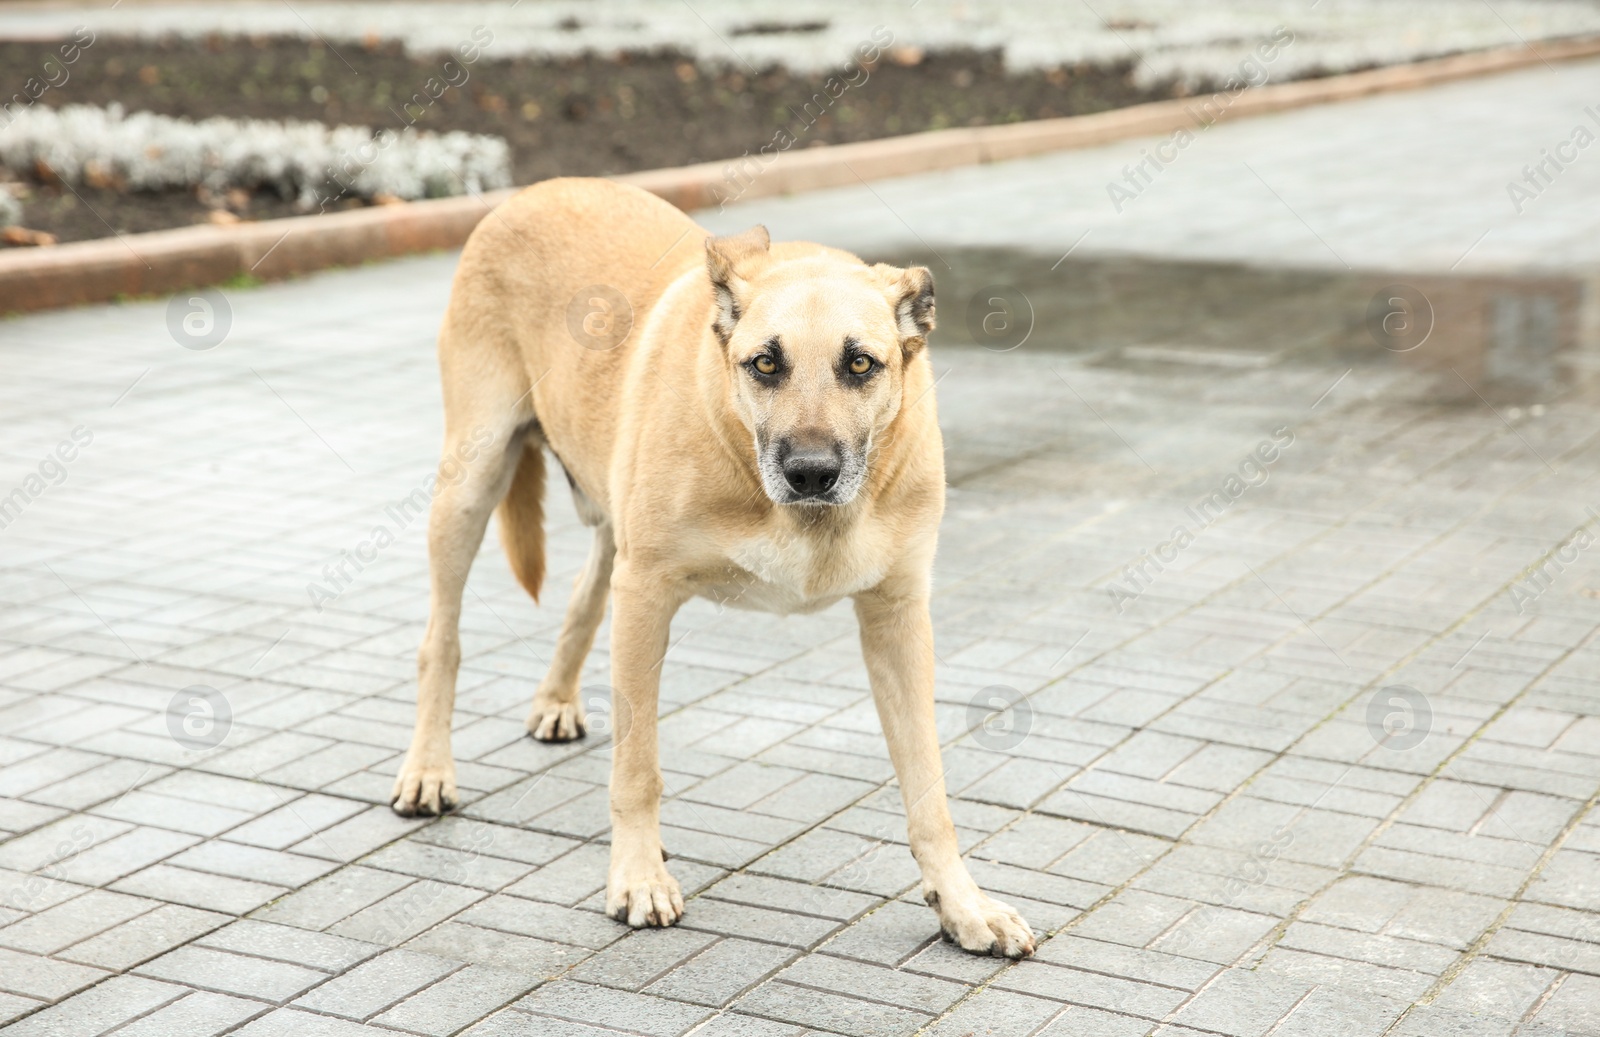 Photo of Homeless dog on city street. Abandoned animal